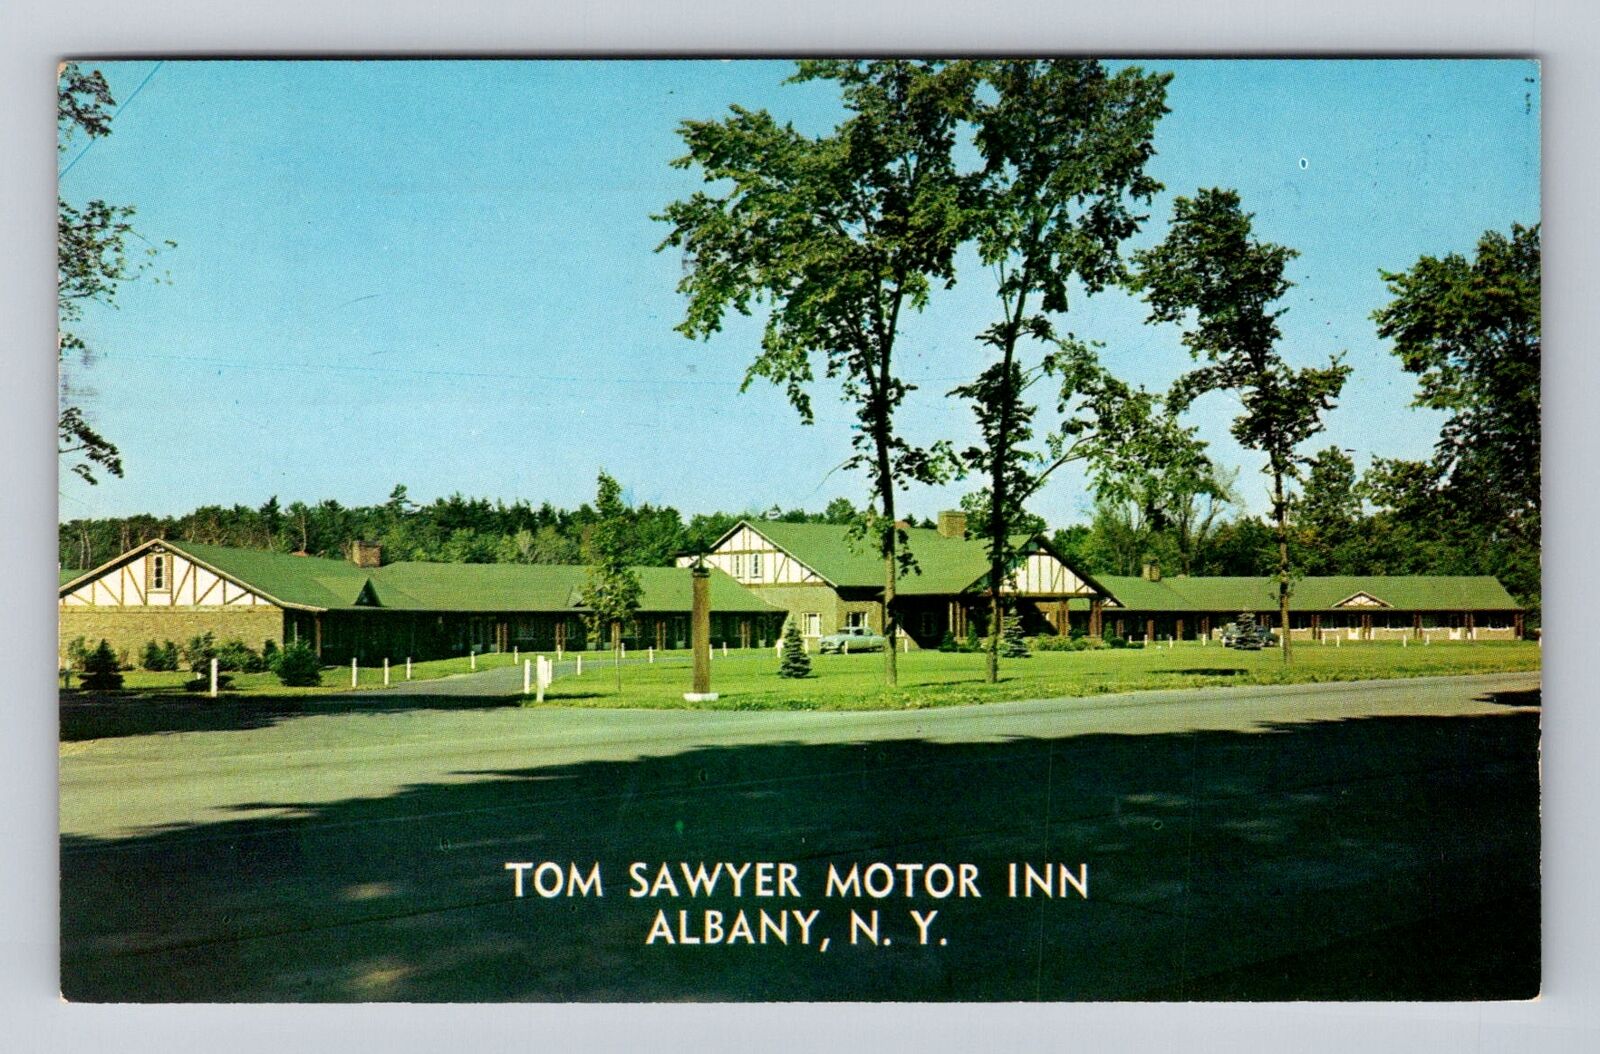 Albany NY-New York, Tom Sawyer Motor Inn Advertising, Vintage c1957 Postcard